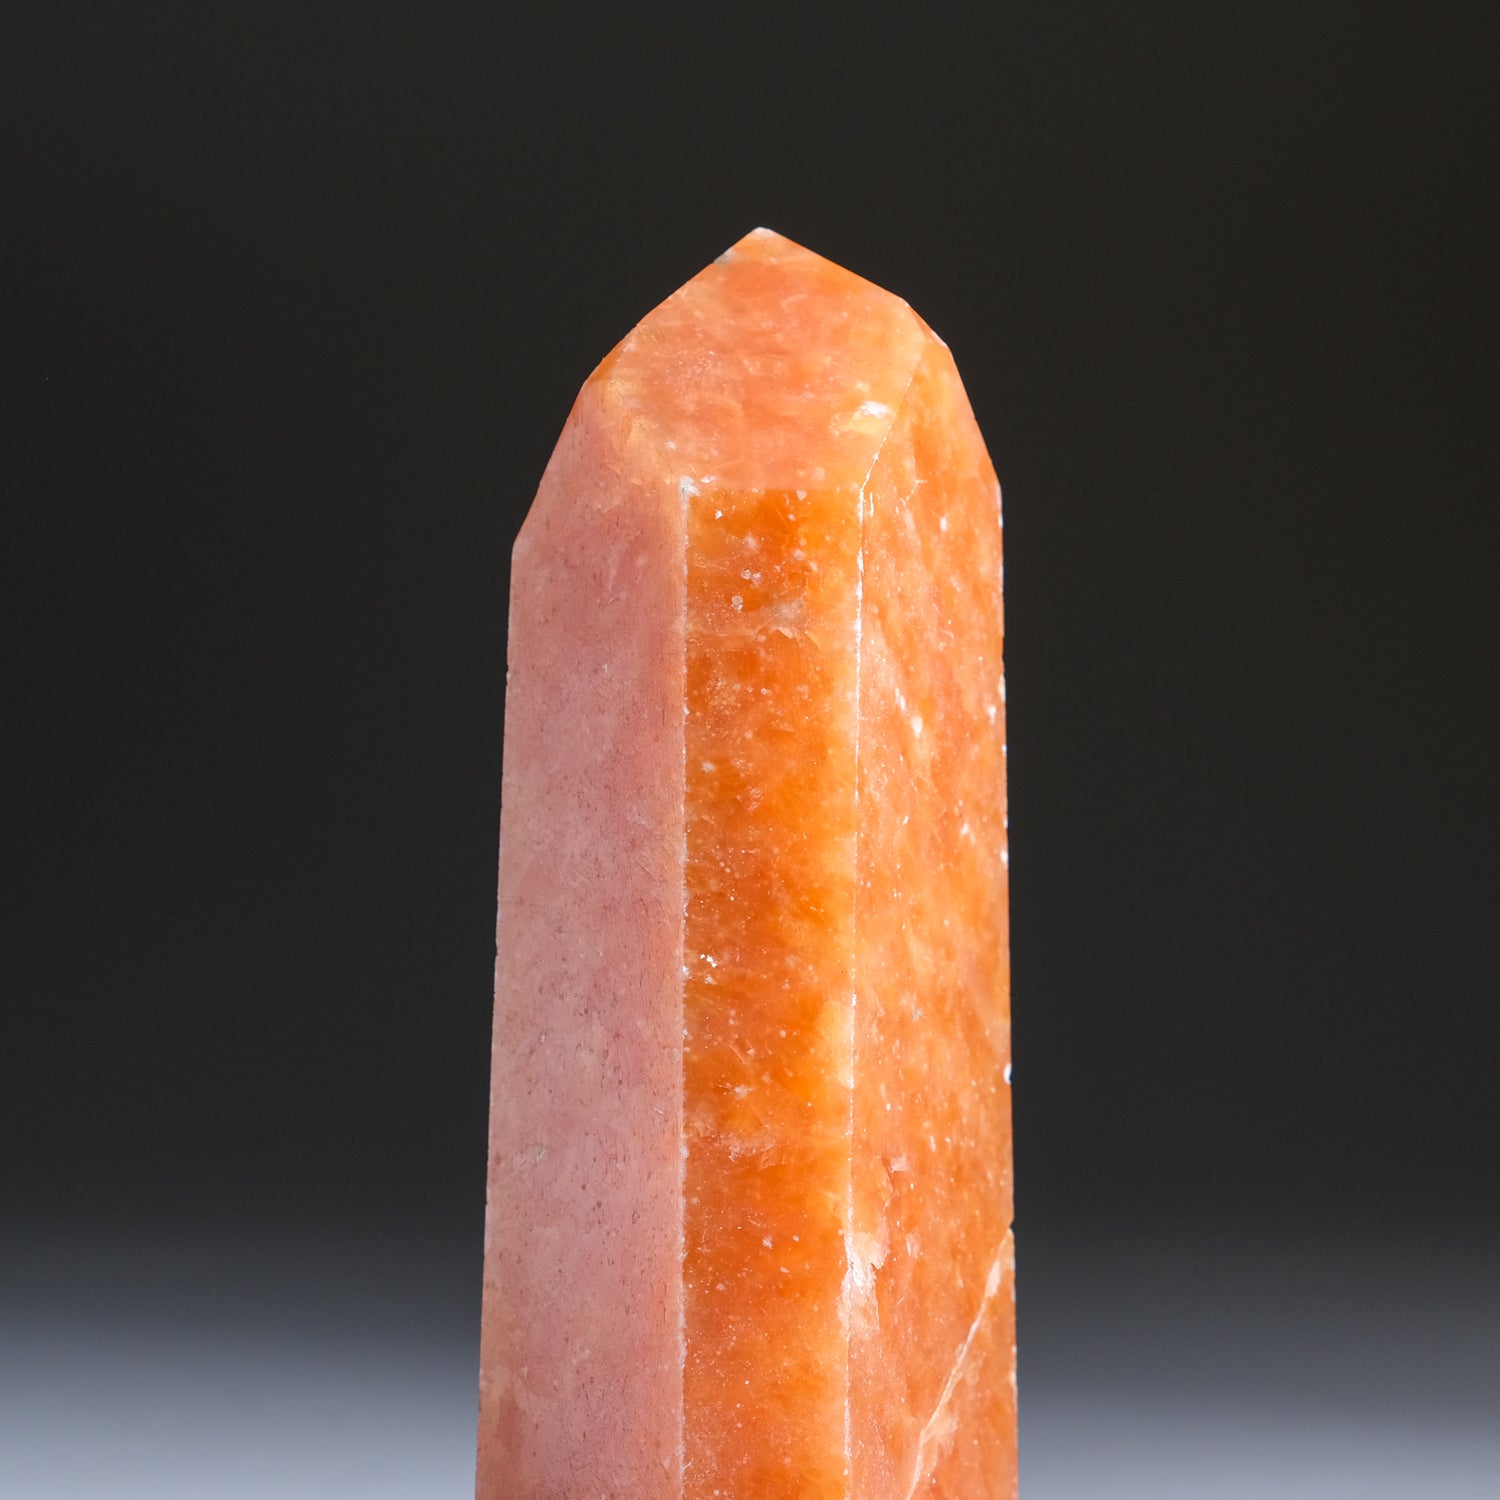 Tangerine Quartz Obelisk From Brazil (206.5 grams)